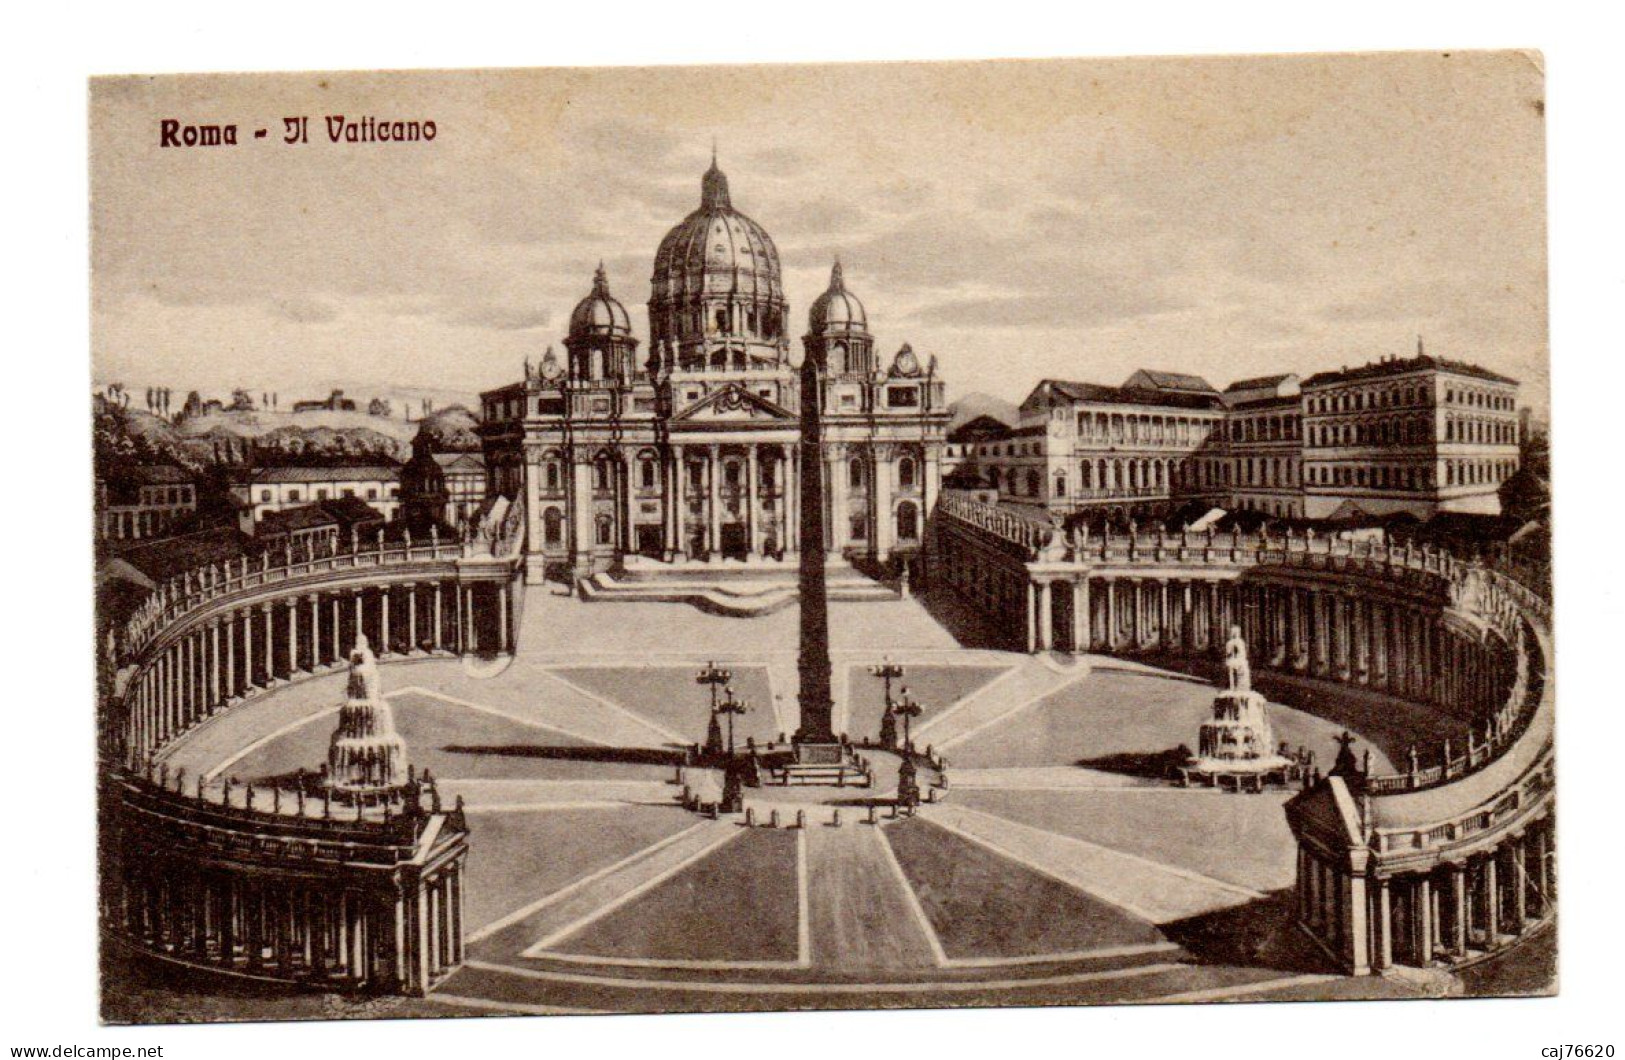 Roma , Il Vaticano , Rome,  Le Vatican - Andere Monumente & Gebäude